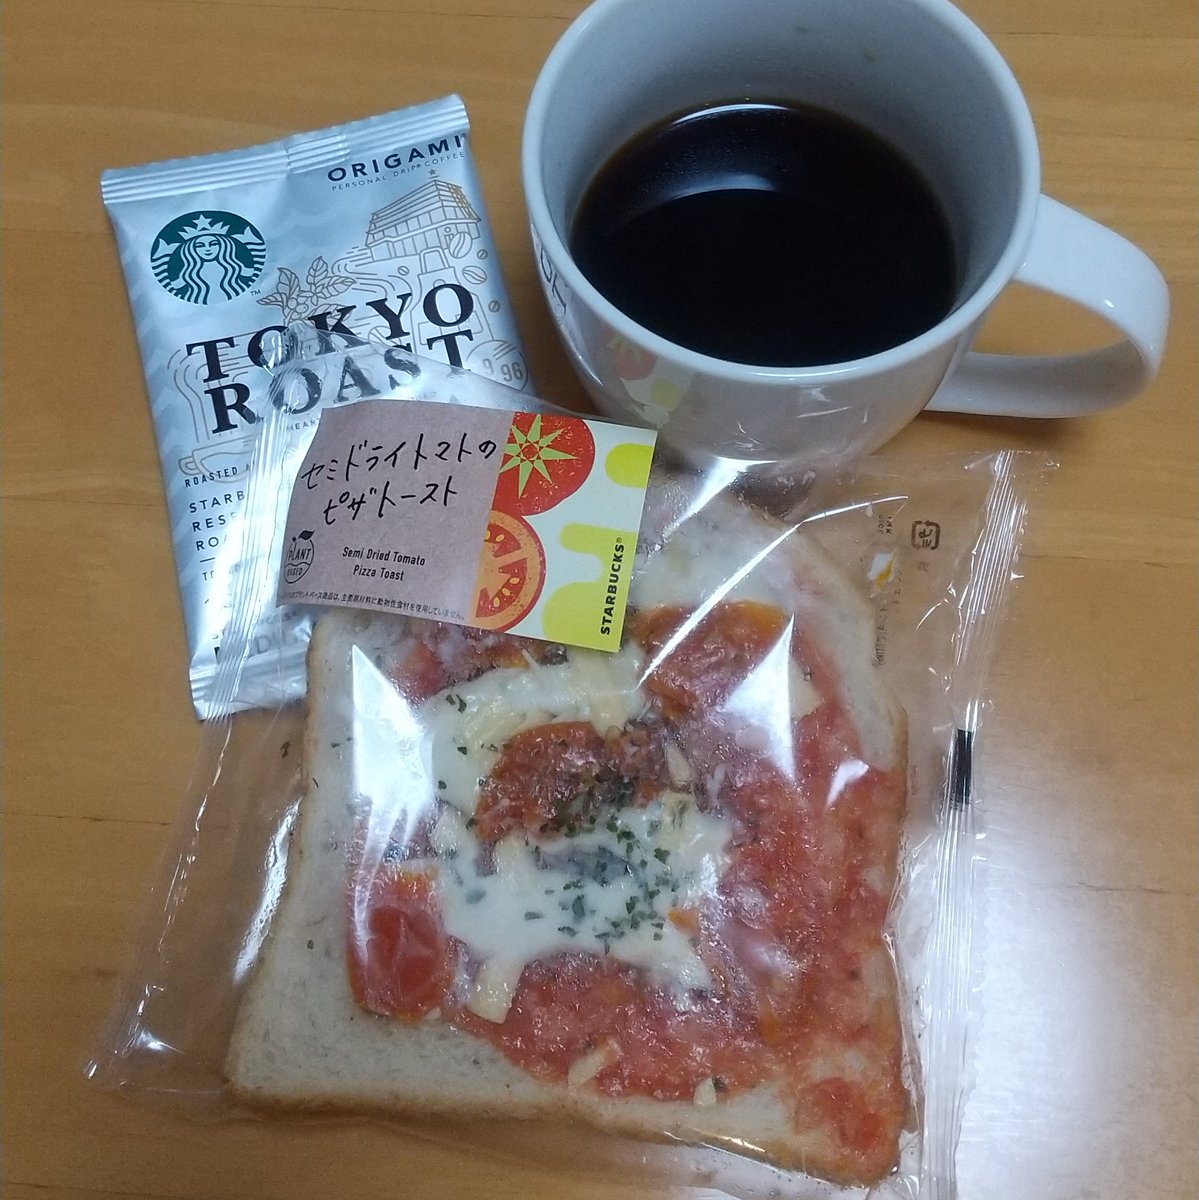 休日スタバモーニング☀セミドライトマトのピザトーストとORIGAMIのTOKYOローストをいれました。冠してるだけあって、トマトが甘くてジューシーで満足感あり。よく食べてるけど食べ飽きないです😁

#スタバ　#セミドライトマトのピザトースト　#TOKYOロースト　#ORIGAMI